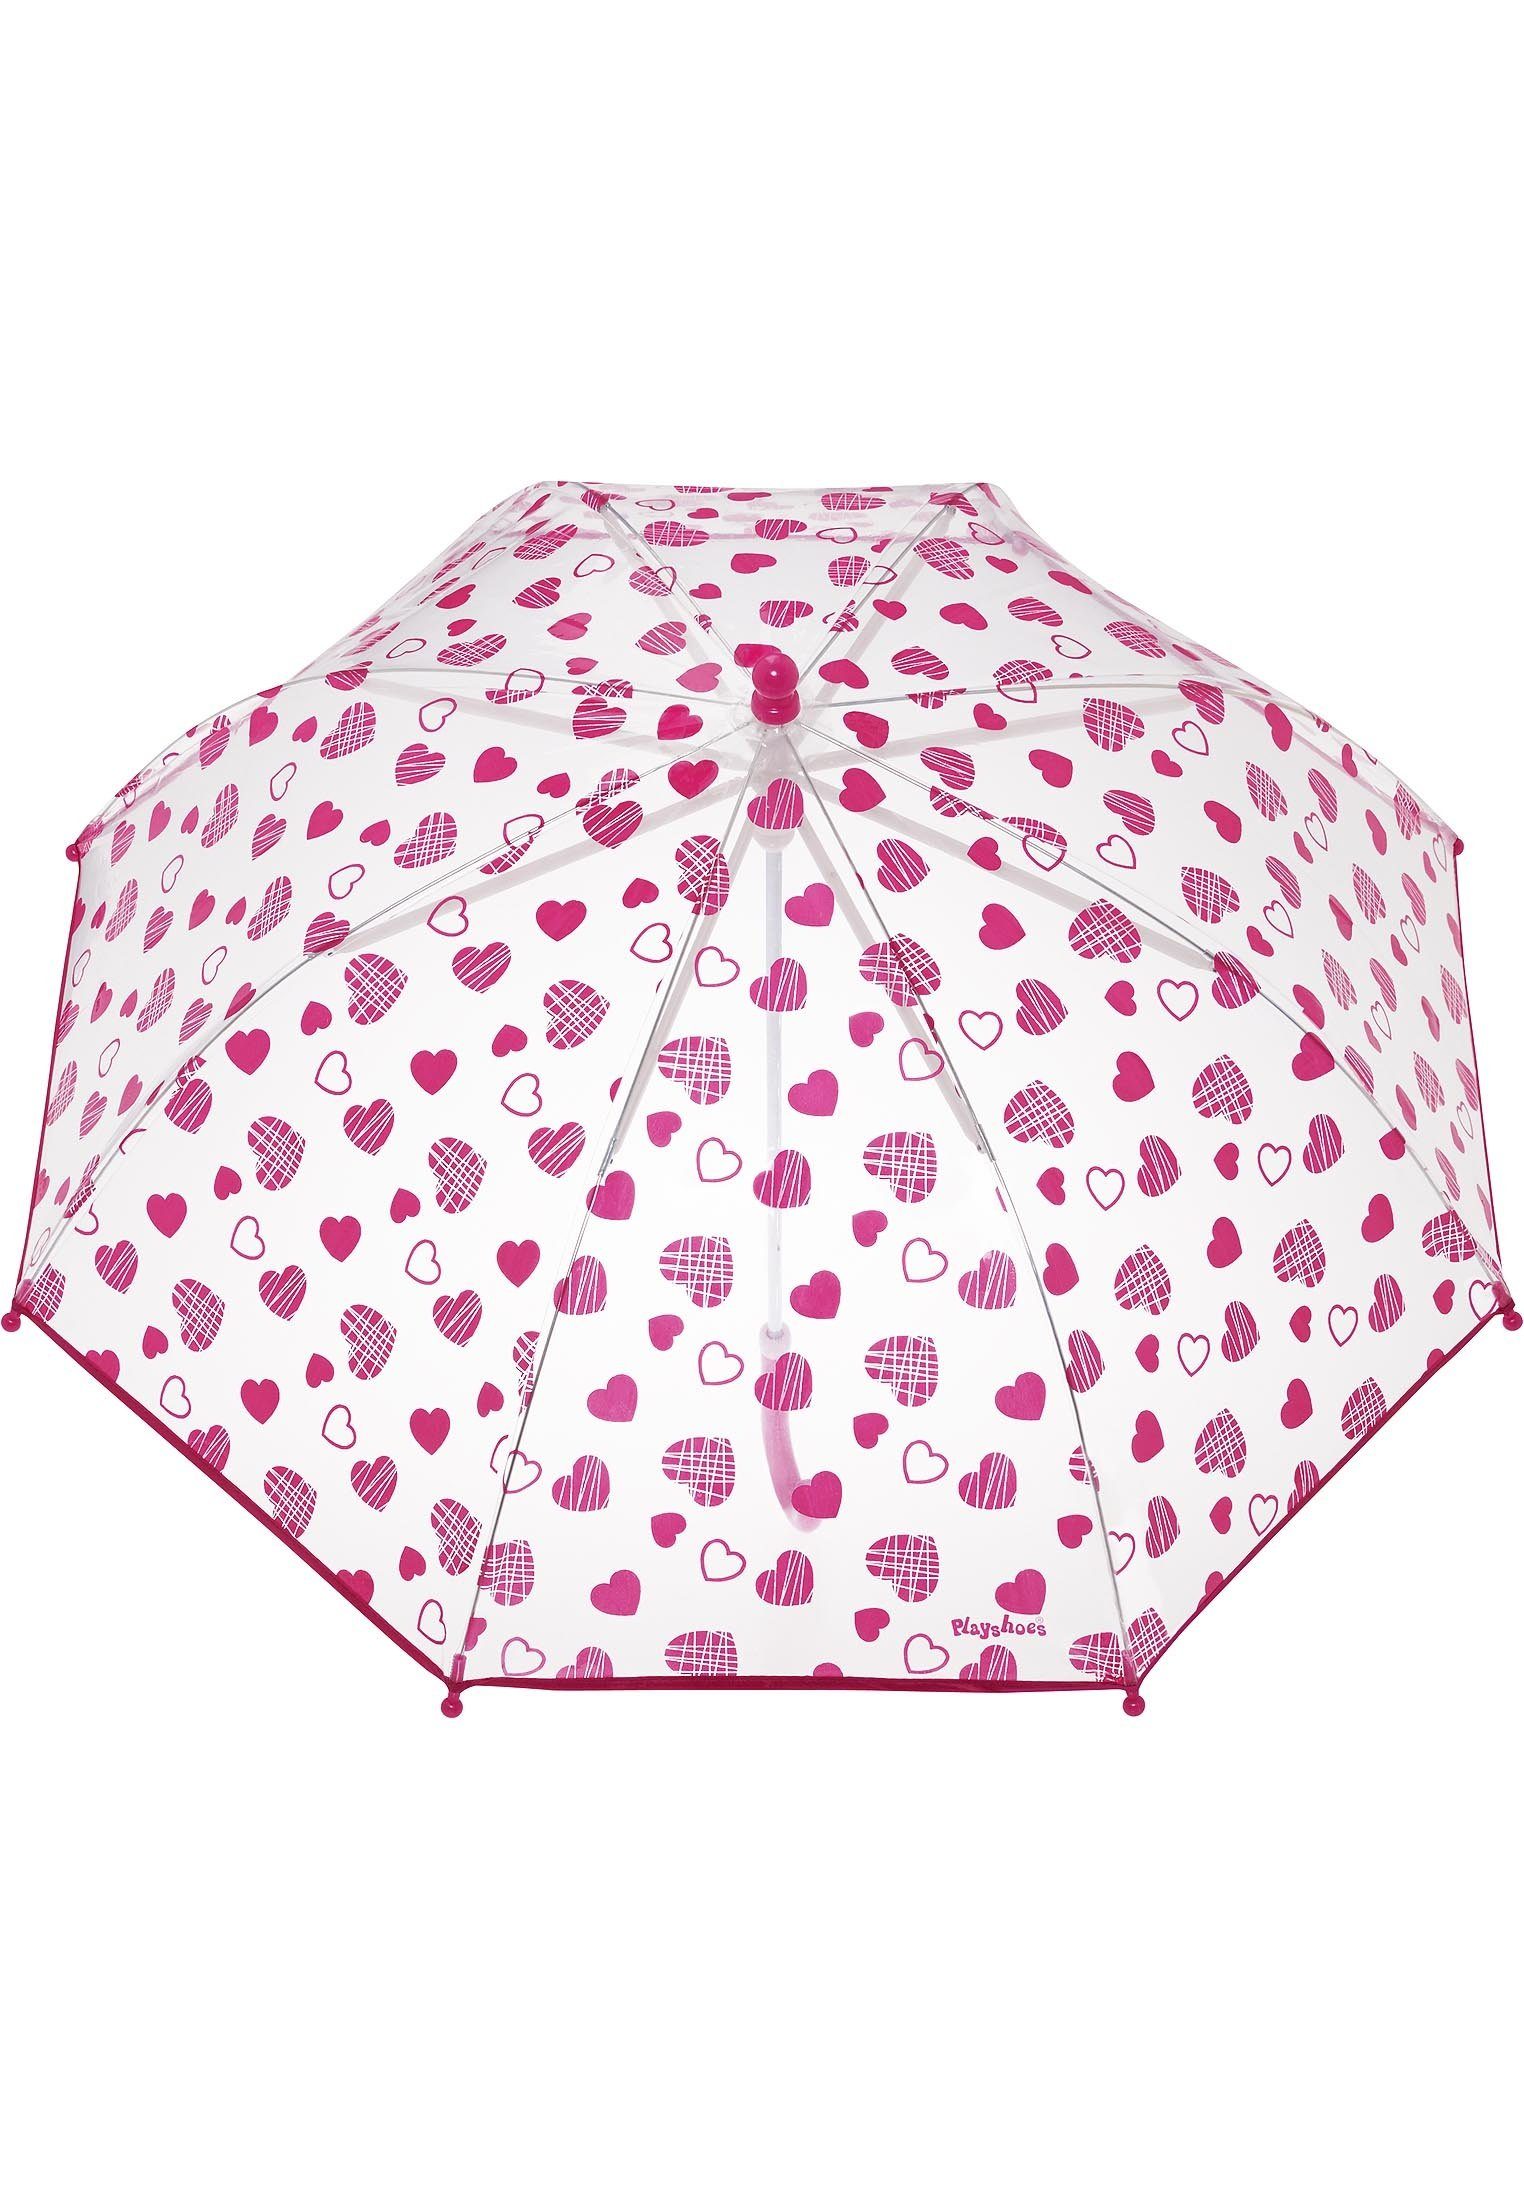 Stockregenschirm Regenschirm Herzchen Playshoes